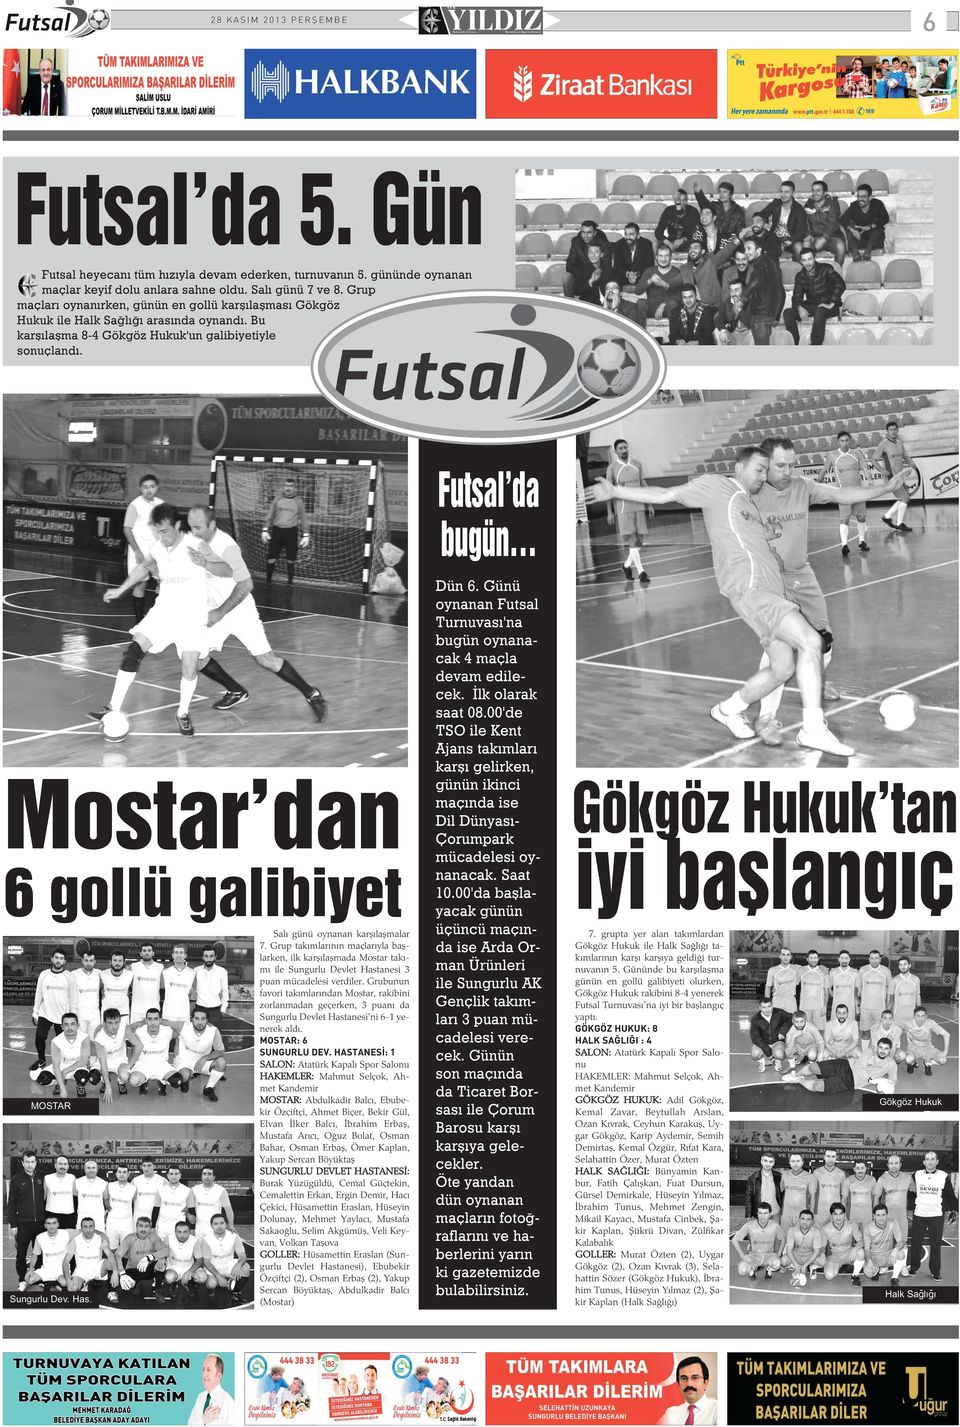 Futsal'da bugün Mostar'dan 6 gollü galibiyet Salý günü oynanan karþýlaþmalar 7.